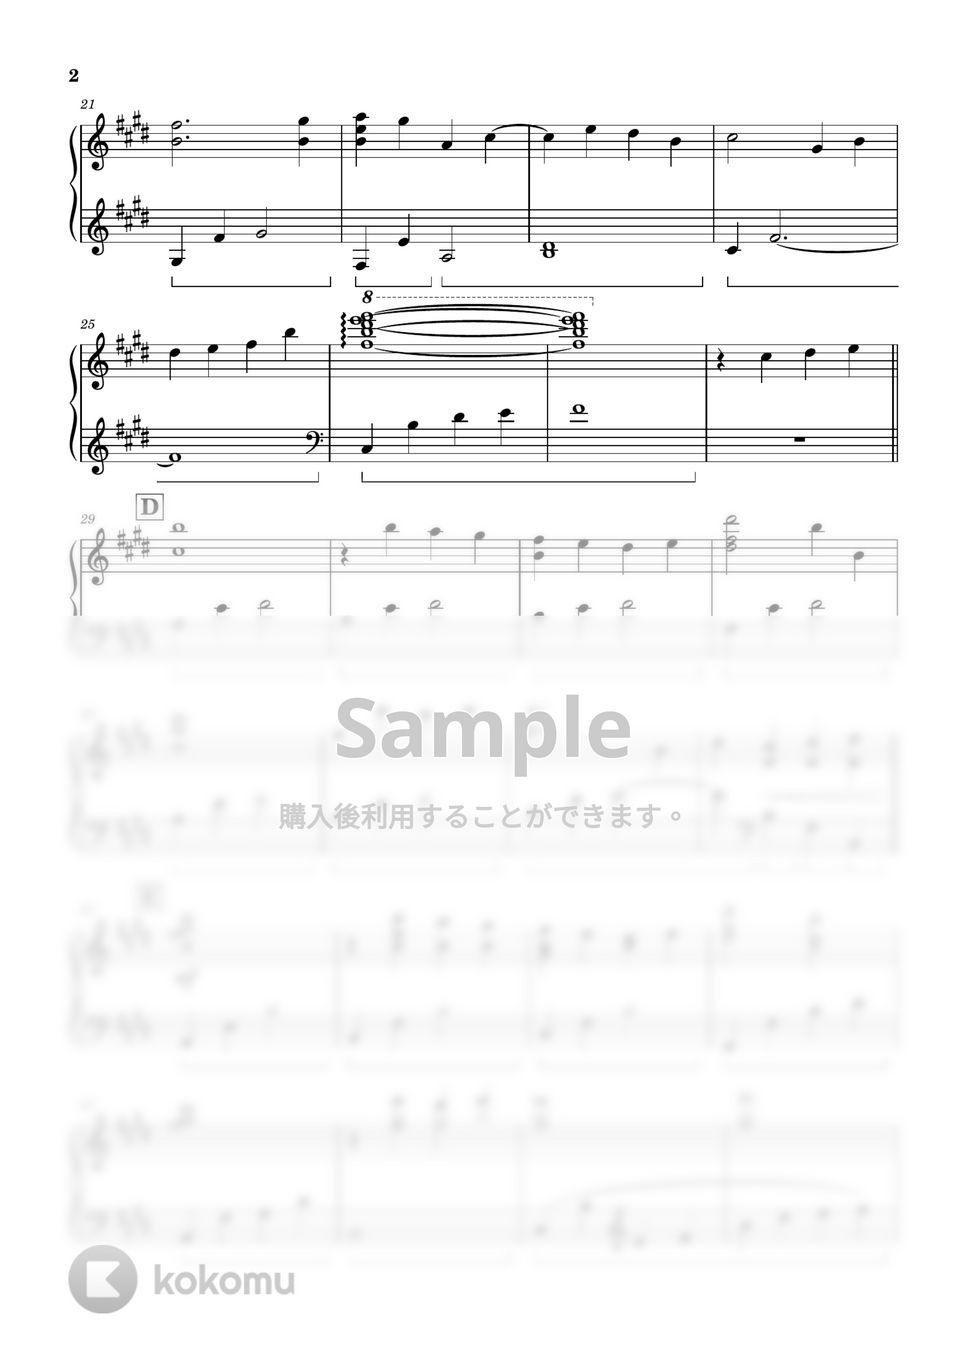 ドラマ「最愛」 - Saiai - Pf Solo Ver. by ちゃんRINA。